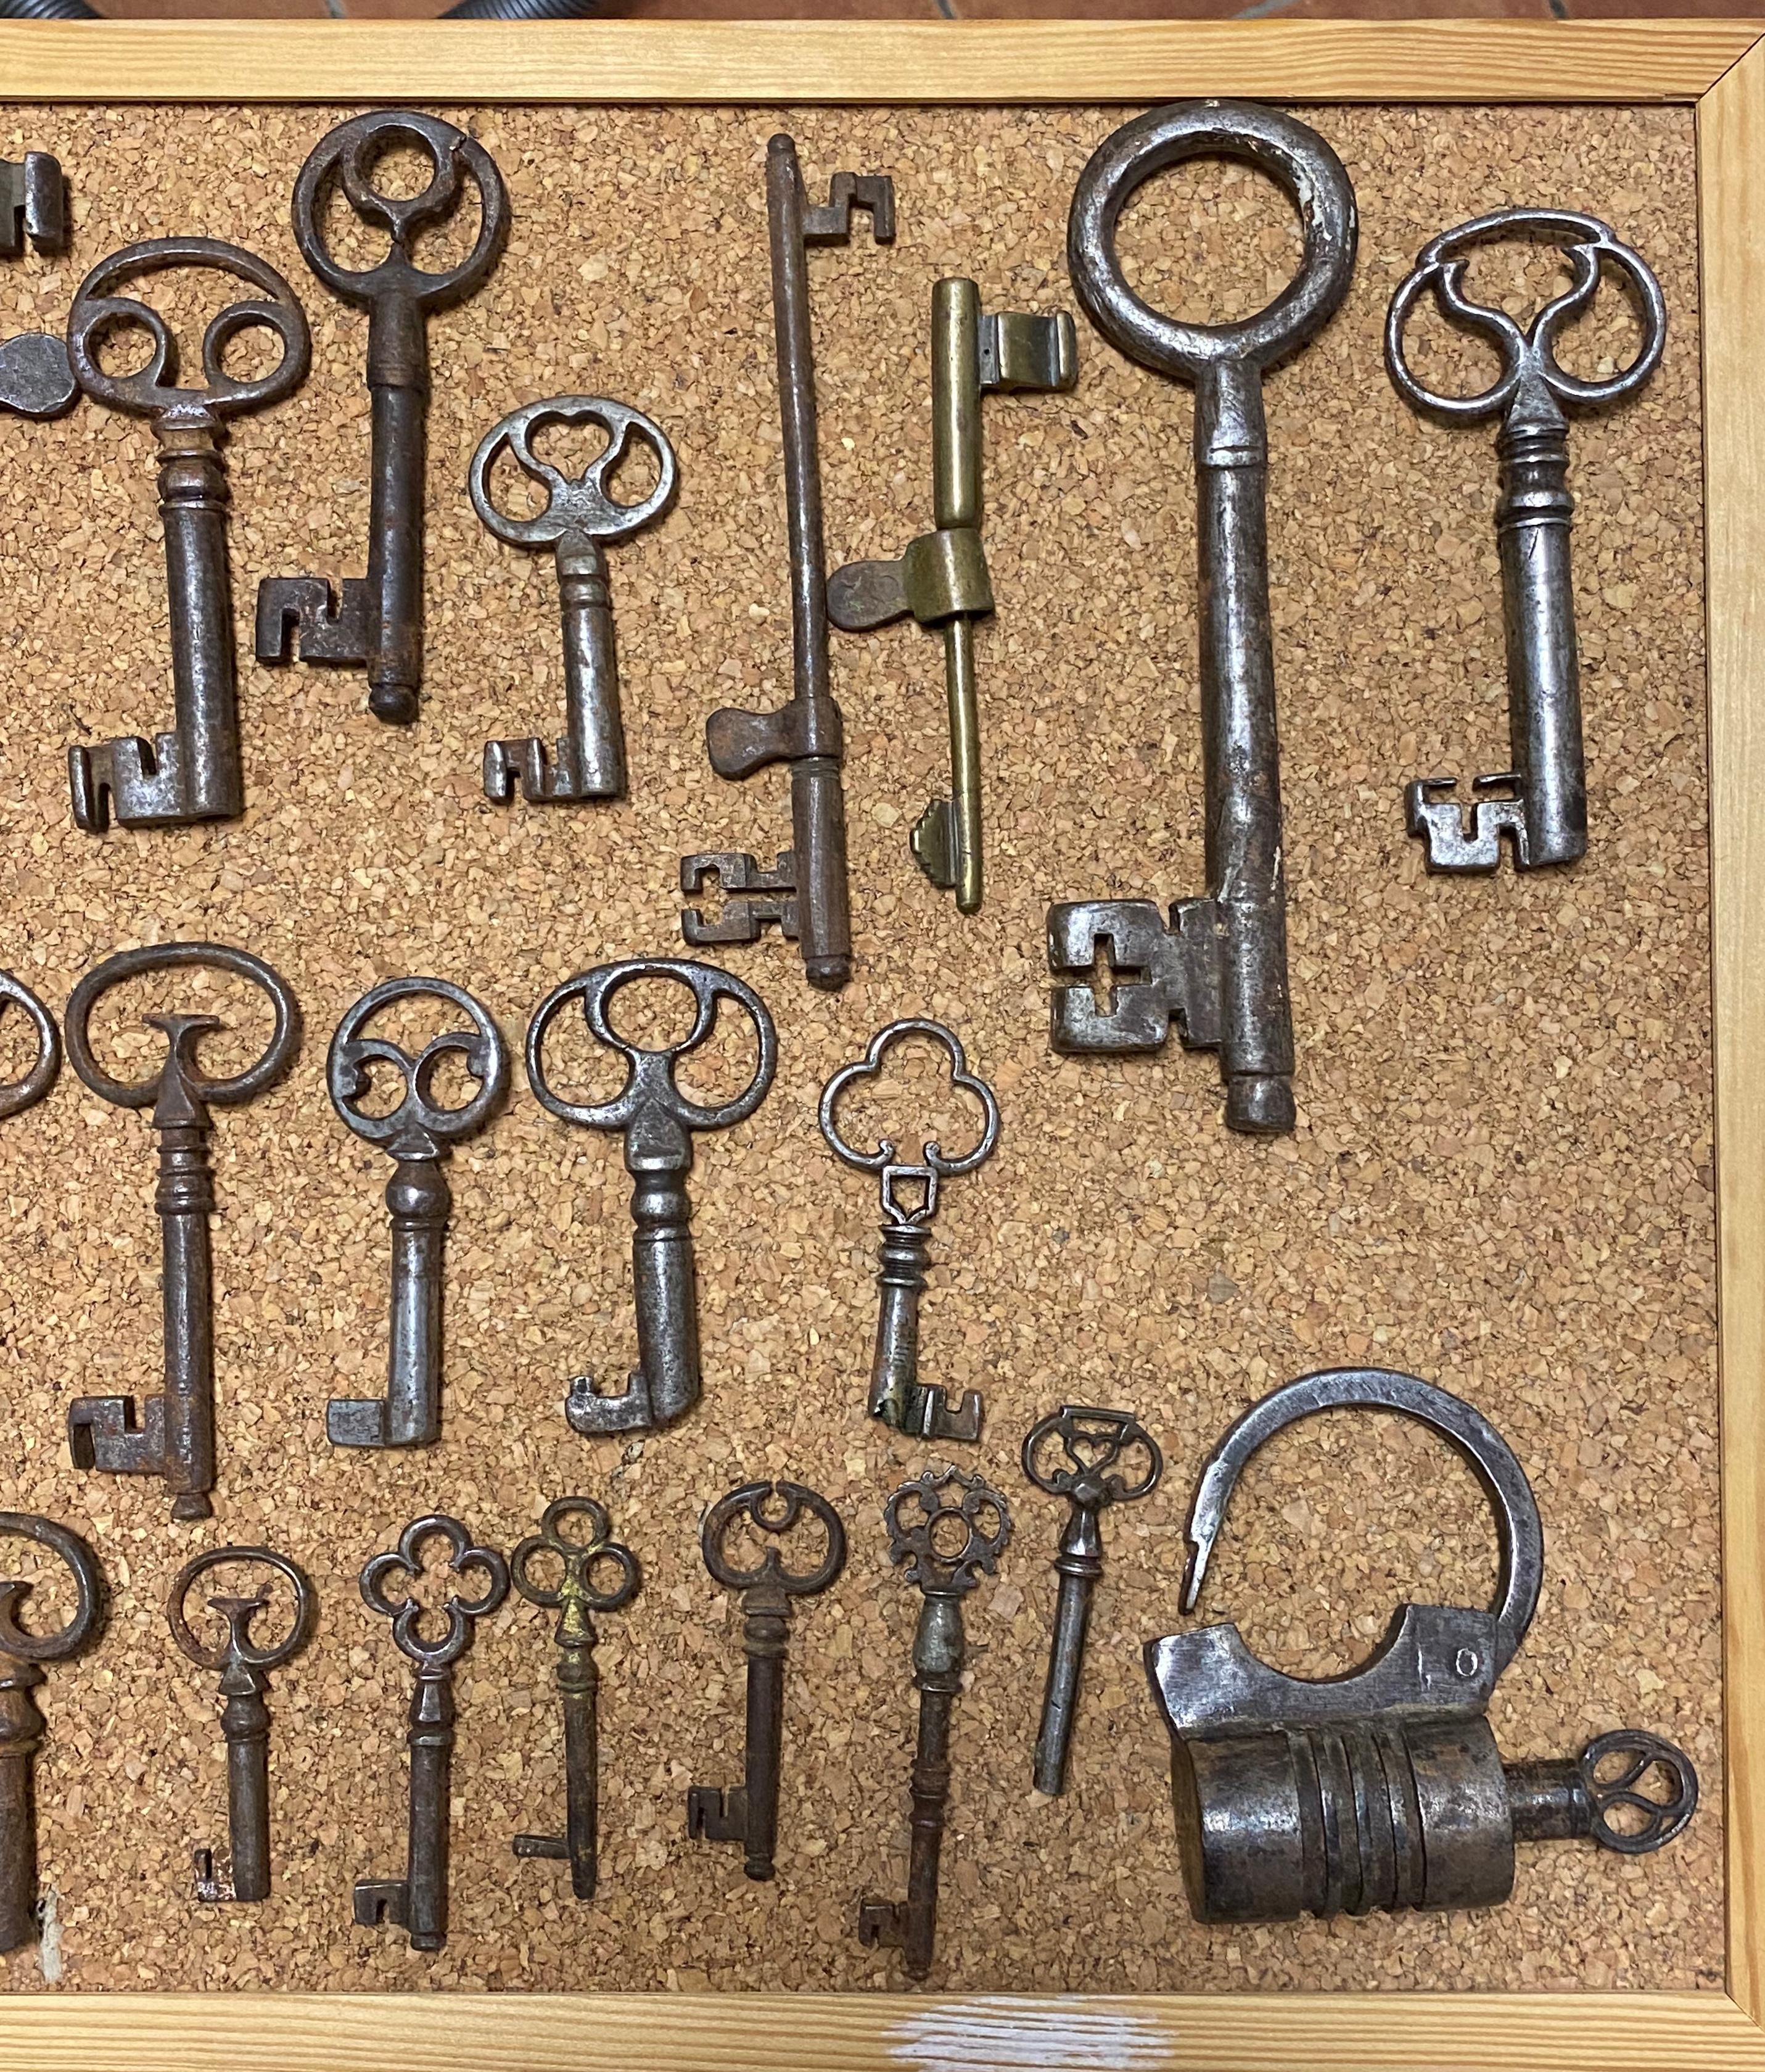 18th century keys